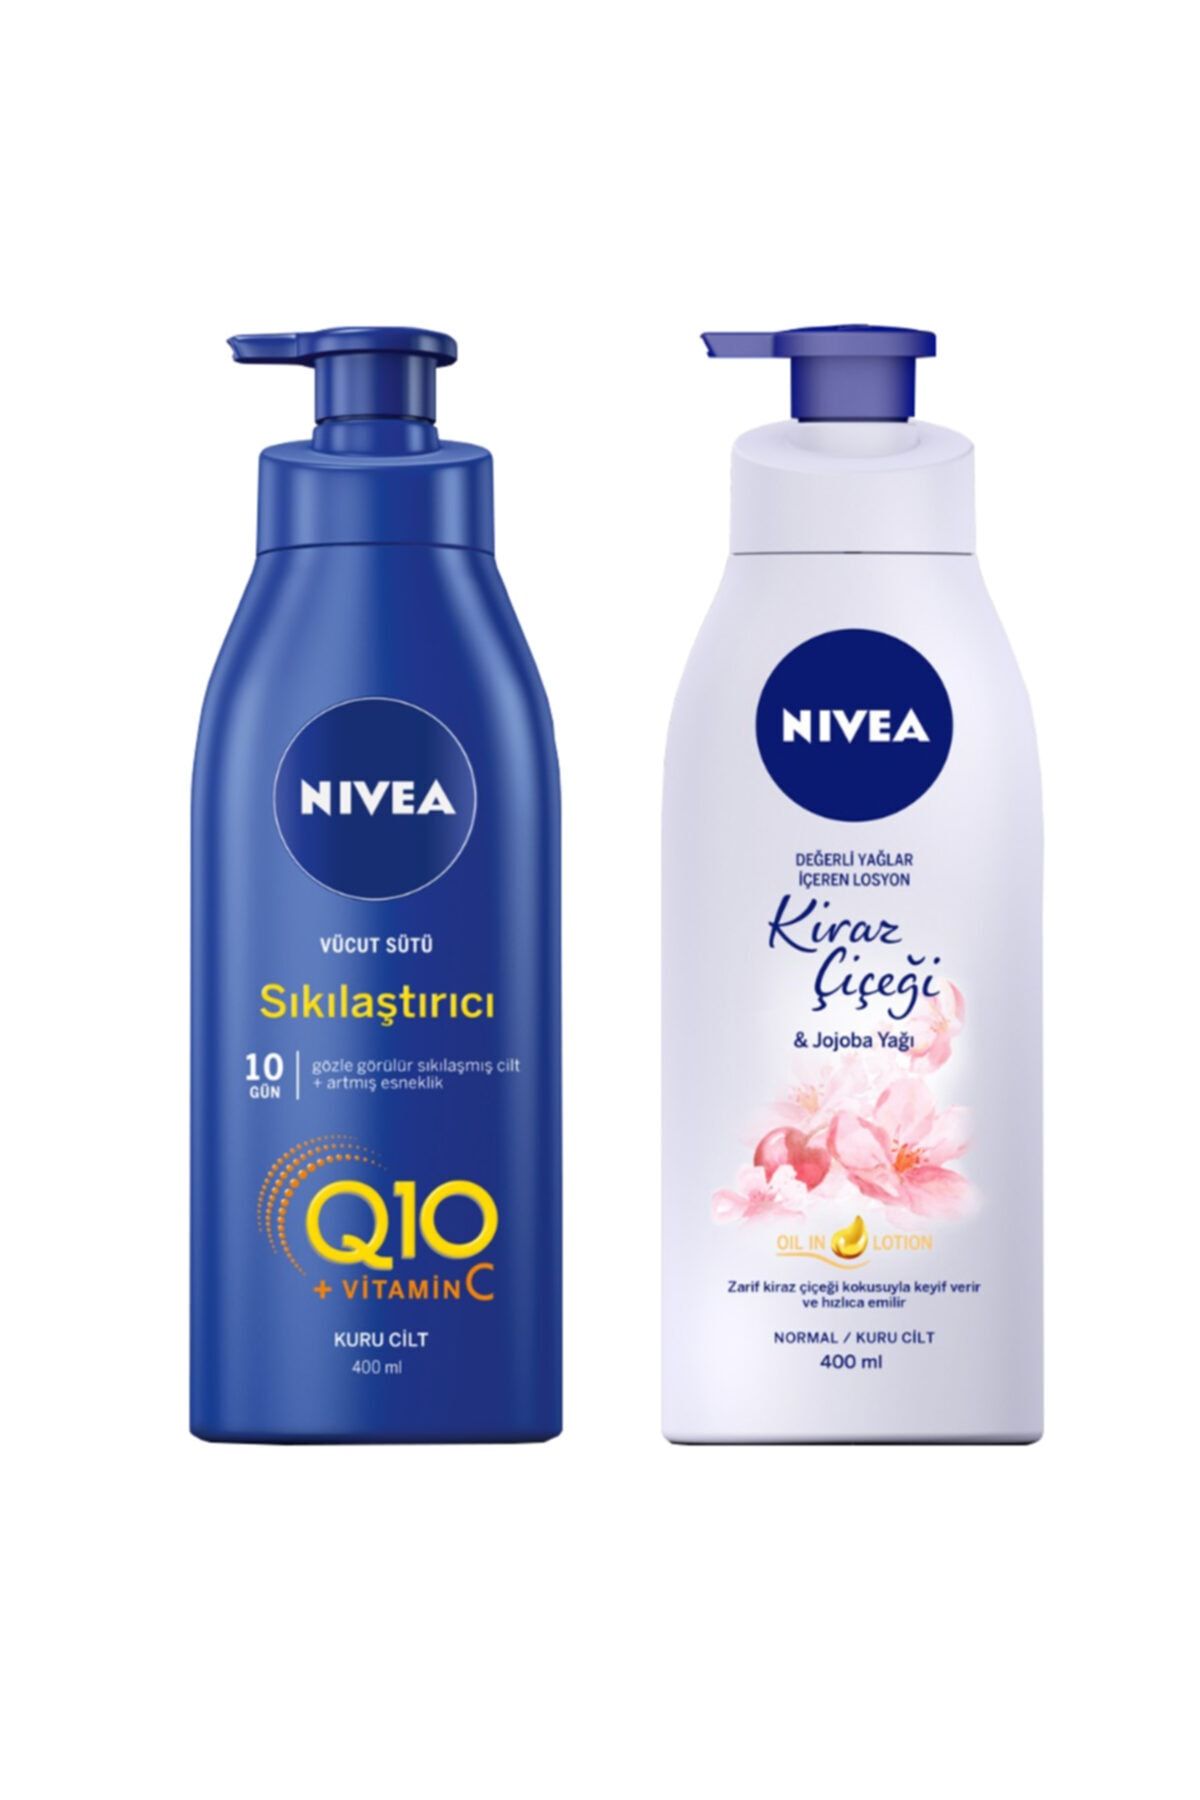 NIVEA Besleyici Sıkılaştırıcı Vücut Sütü 400 ml + Nbody Pump Kiraz Çiçeği Jjojoba Yağı Losyon 400 ml